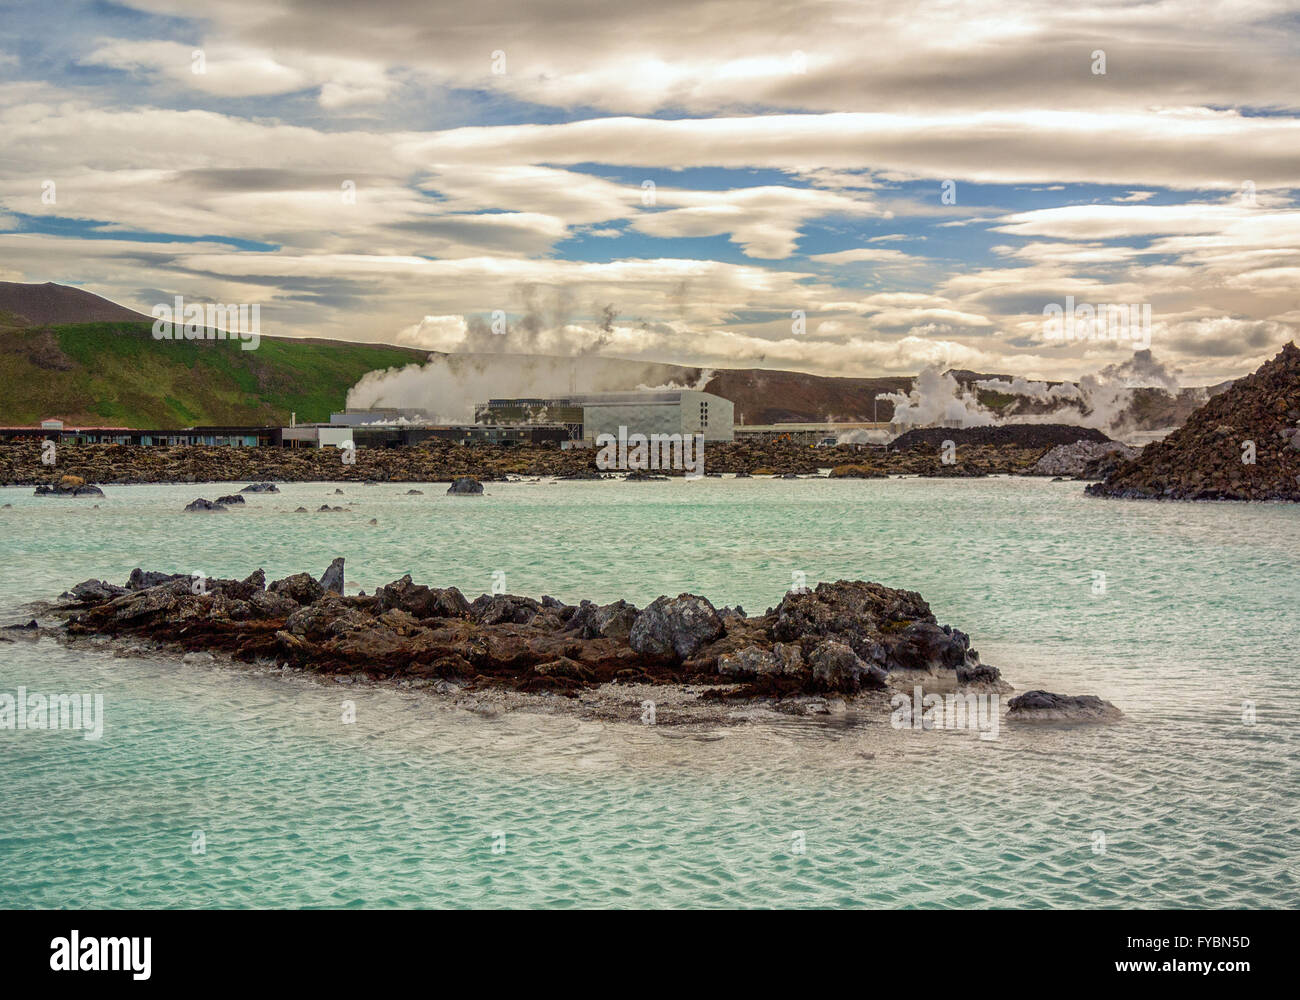 Península de Reykjanes, al suroeste de Islandia, Islandia. 5 ago, 2015. El famoso hombre geotermal Blue Lagoon spa situado en un campo de lava en GrindavÃ-k en la península de Reykjanes, al suroeste de Islandia, es alimentada por la salida de agua de la planta de energía geotérmica Svartsengi cercanos (trasero). Sus cálidas aguas son ricas en minerales y reputado para ayudar a las personas con enfermedades de la piel. Un destino turístico favorito, es uno de los lugares más visitados de Islandia, donde el turismo se ha convertido en un creciente sector de la economía. © Arnold Drapkin/Zuma alambre/Alamy Live News Foto de stock